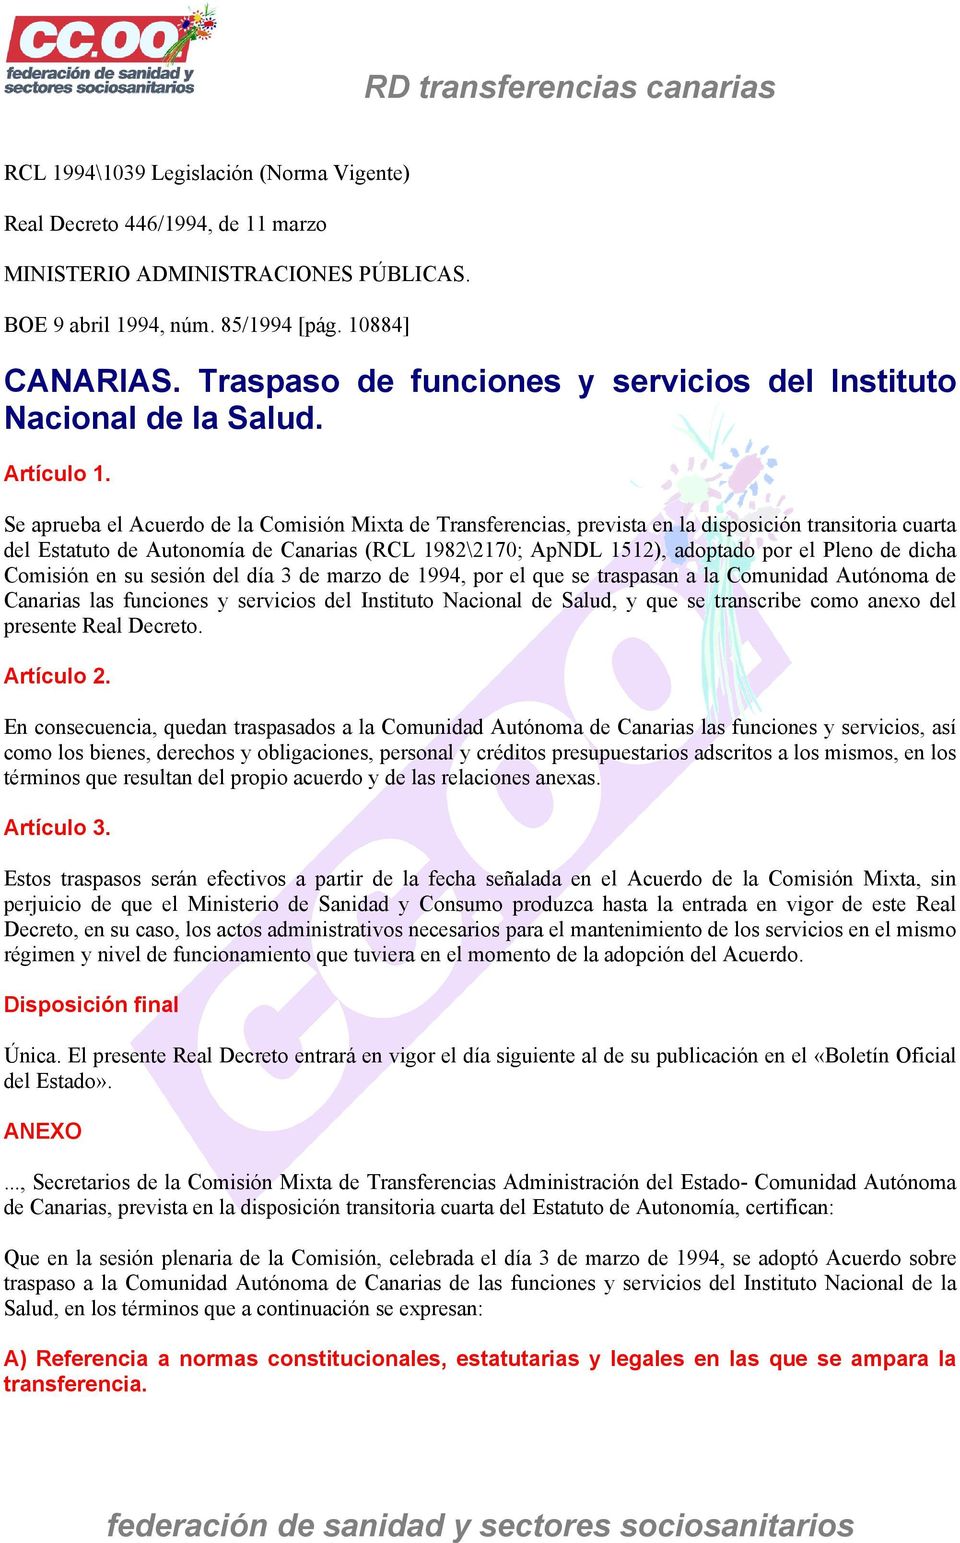 Se aprueba el Acuerdo de la Comisión Mixta de Transferencias, prevista en la disposición transitoria cuarta del Estatuto de Autonomía de Canarias (RCL 1982\2170; ApNDL 1512), adoptado por el Pleno de